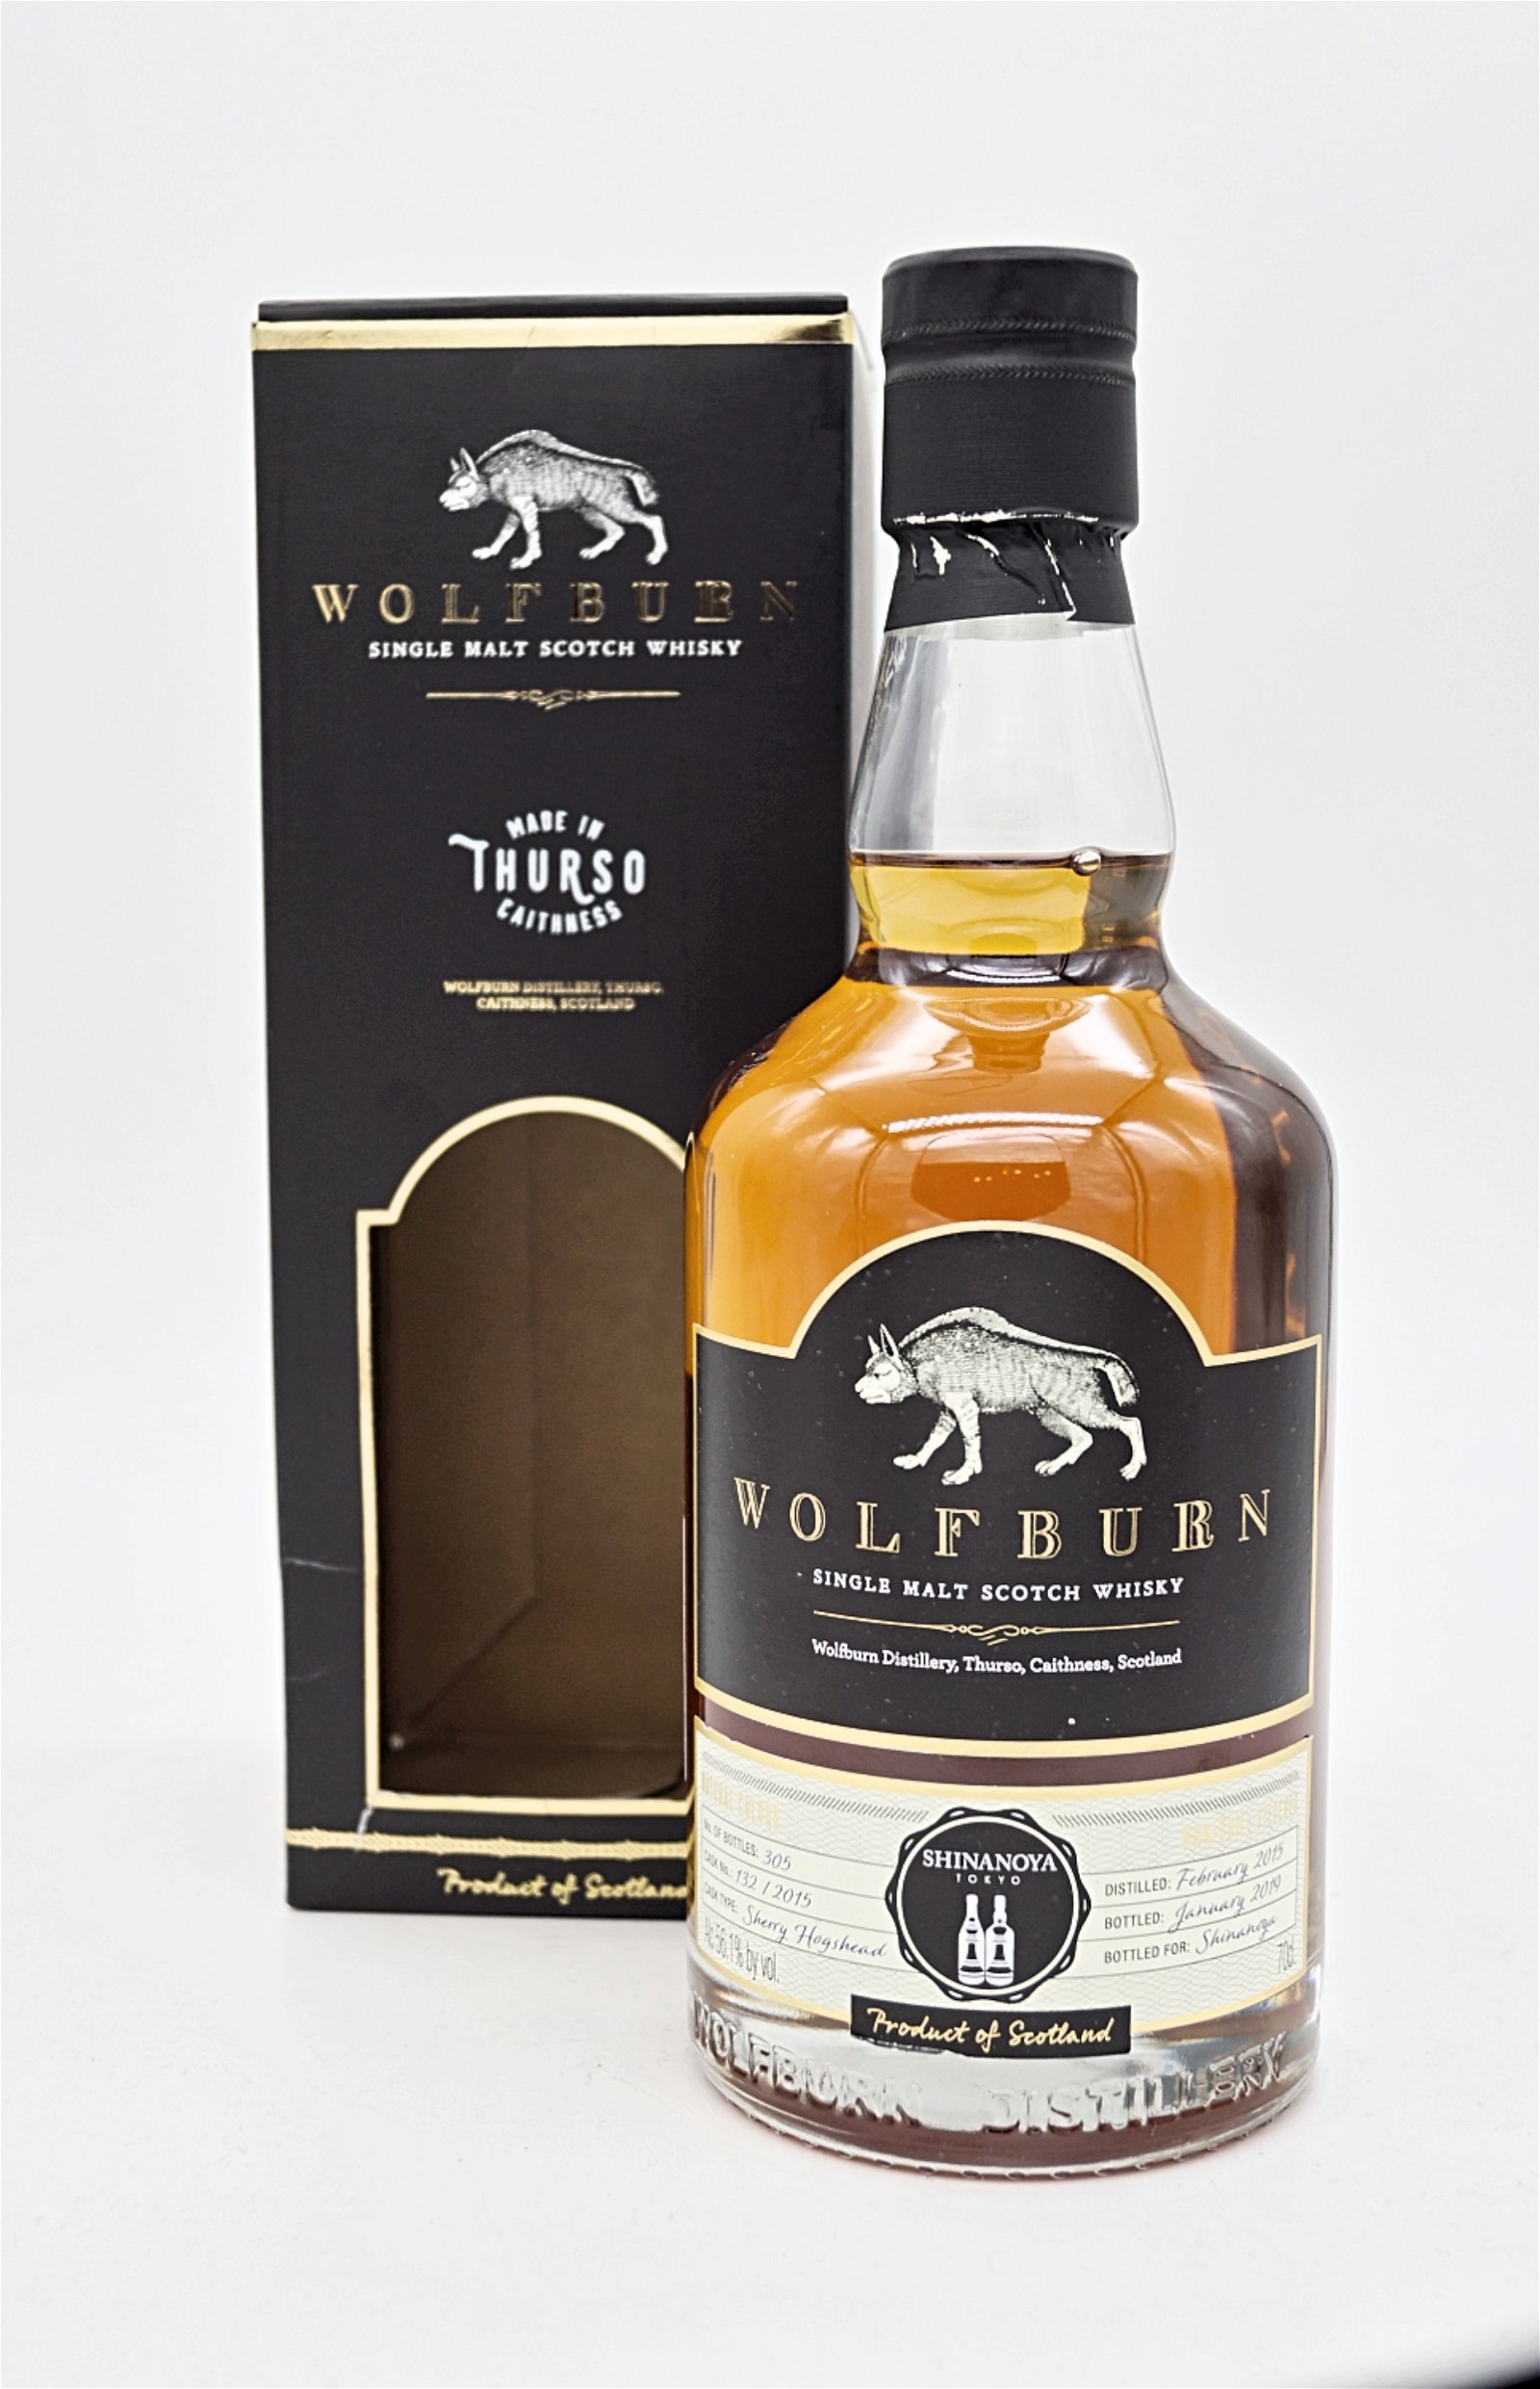 Wolfburn 2015/2019 Sherry Hogshead No. 132/2015 for Shinanoya Single Malt Scotch Whisky